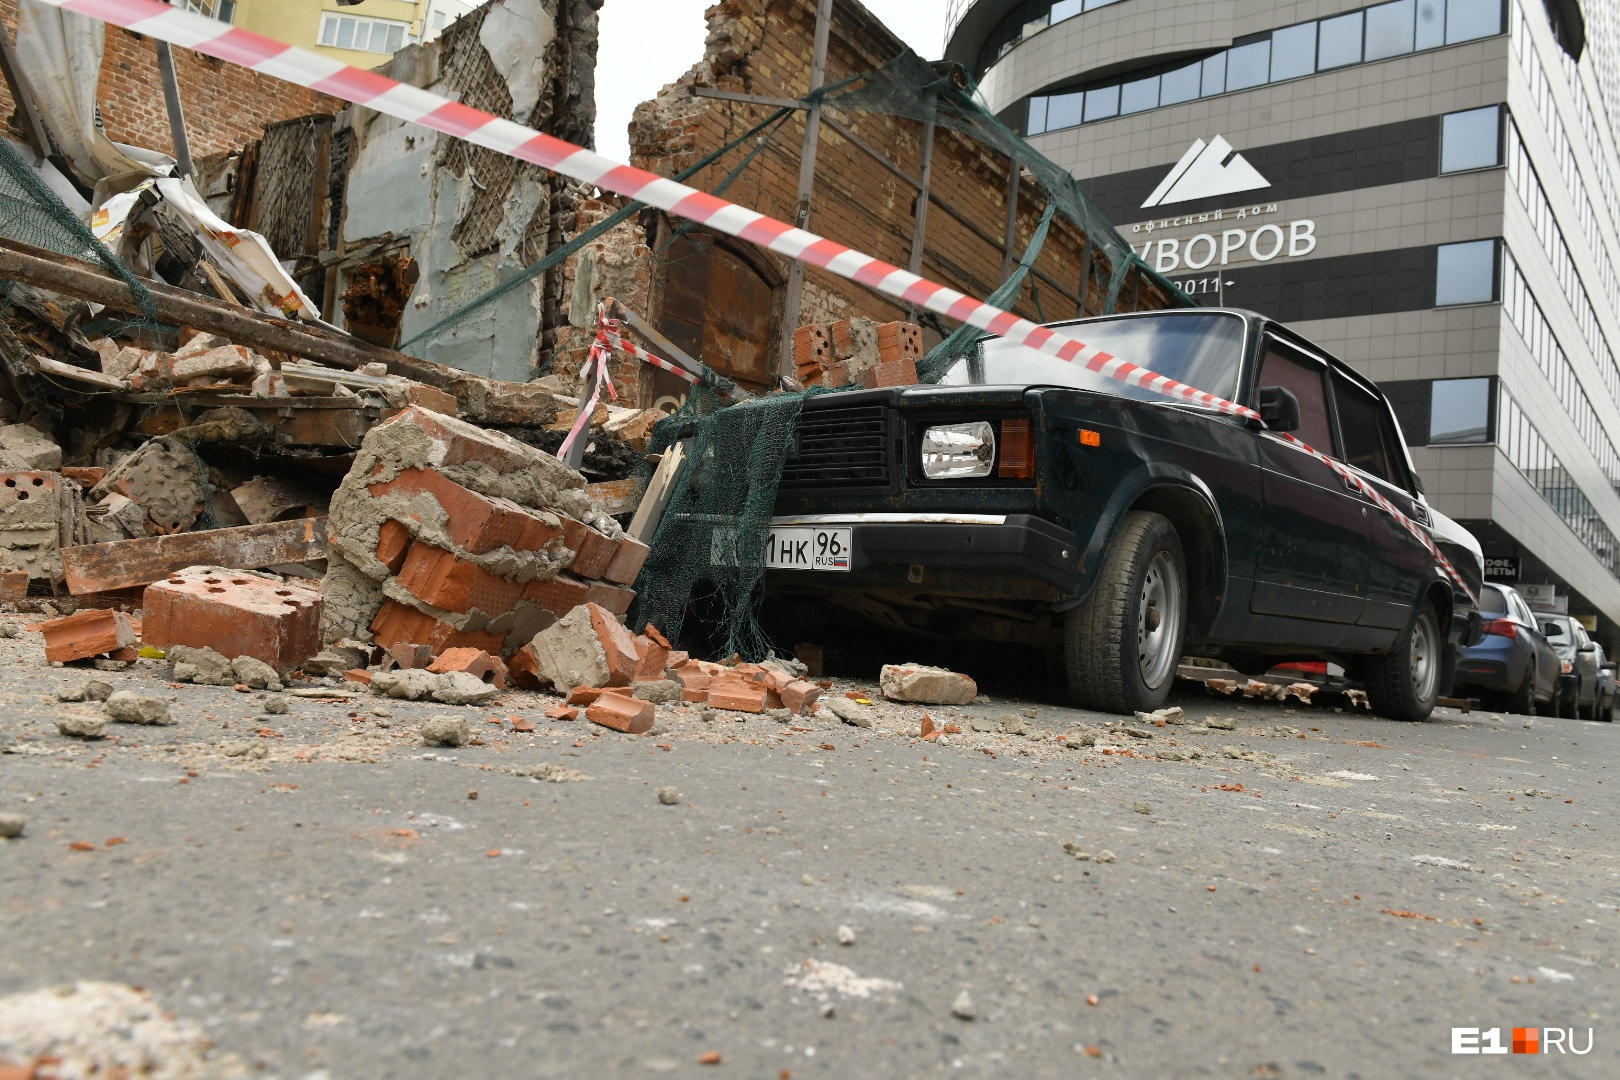 Владелец машины, на которую упали обломки здания на Радищева, собирается судиться с его владельцем